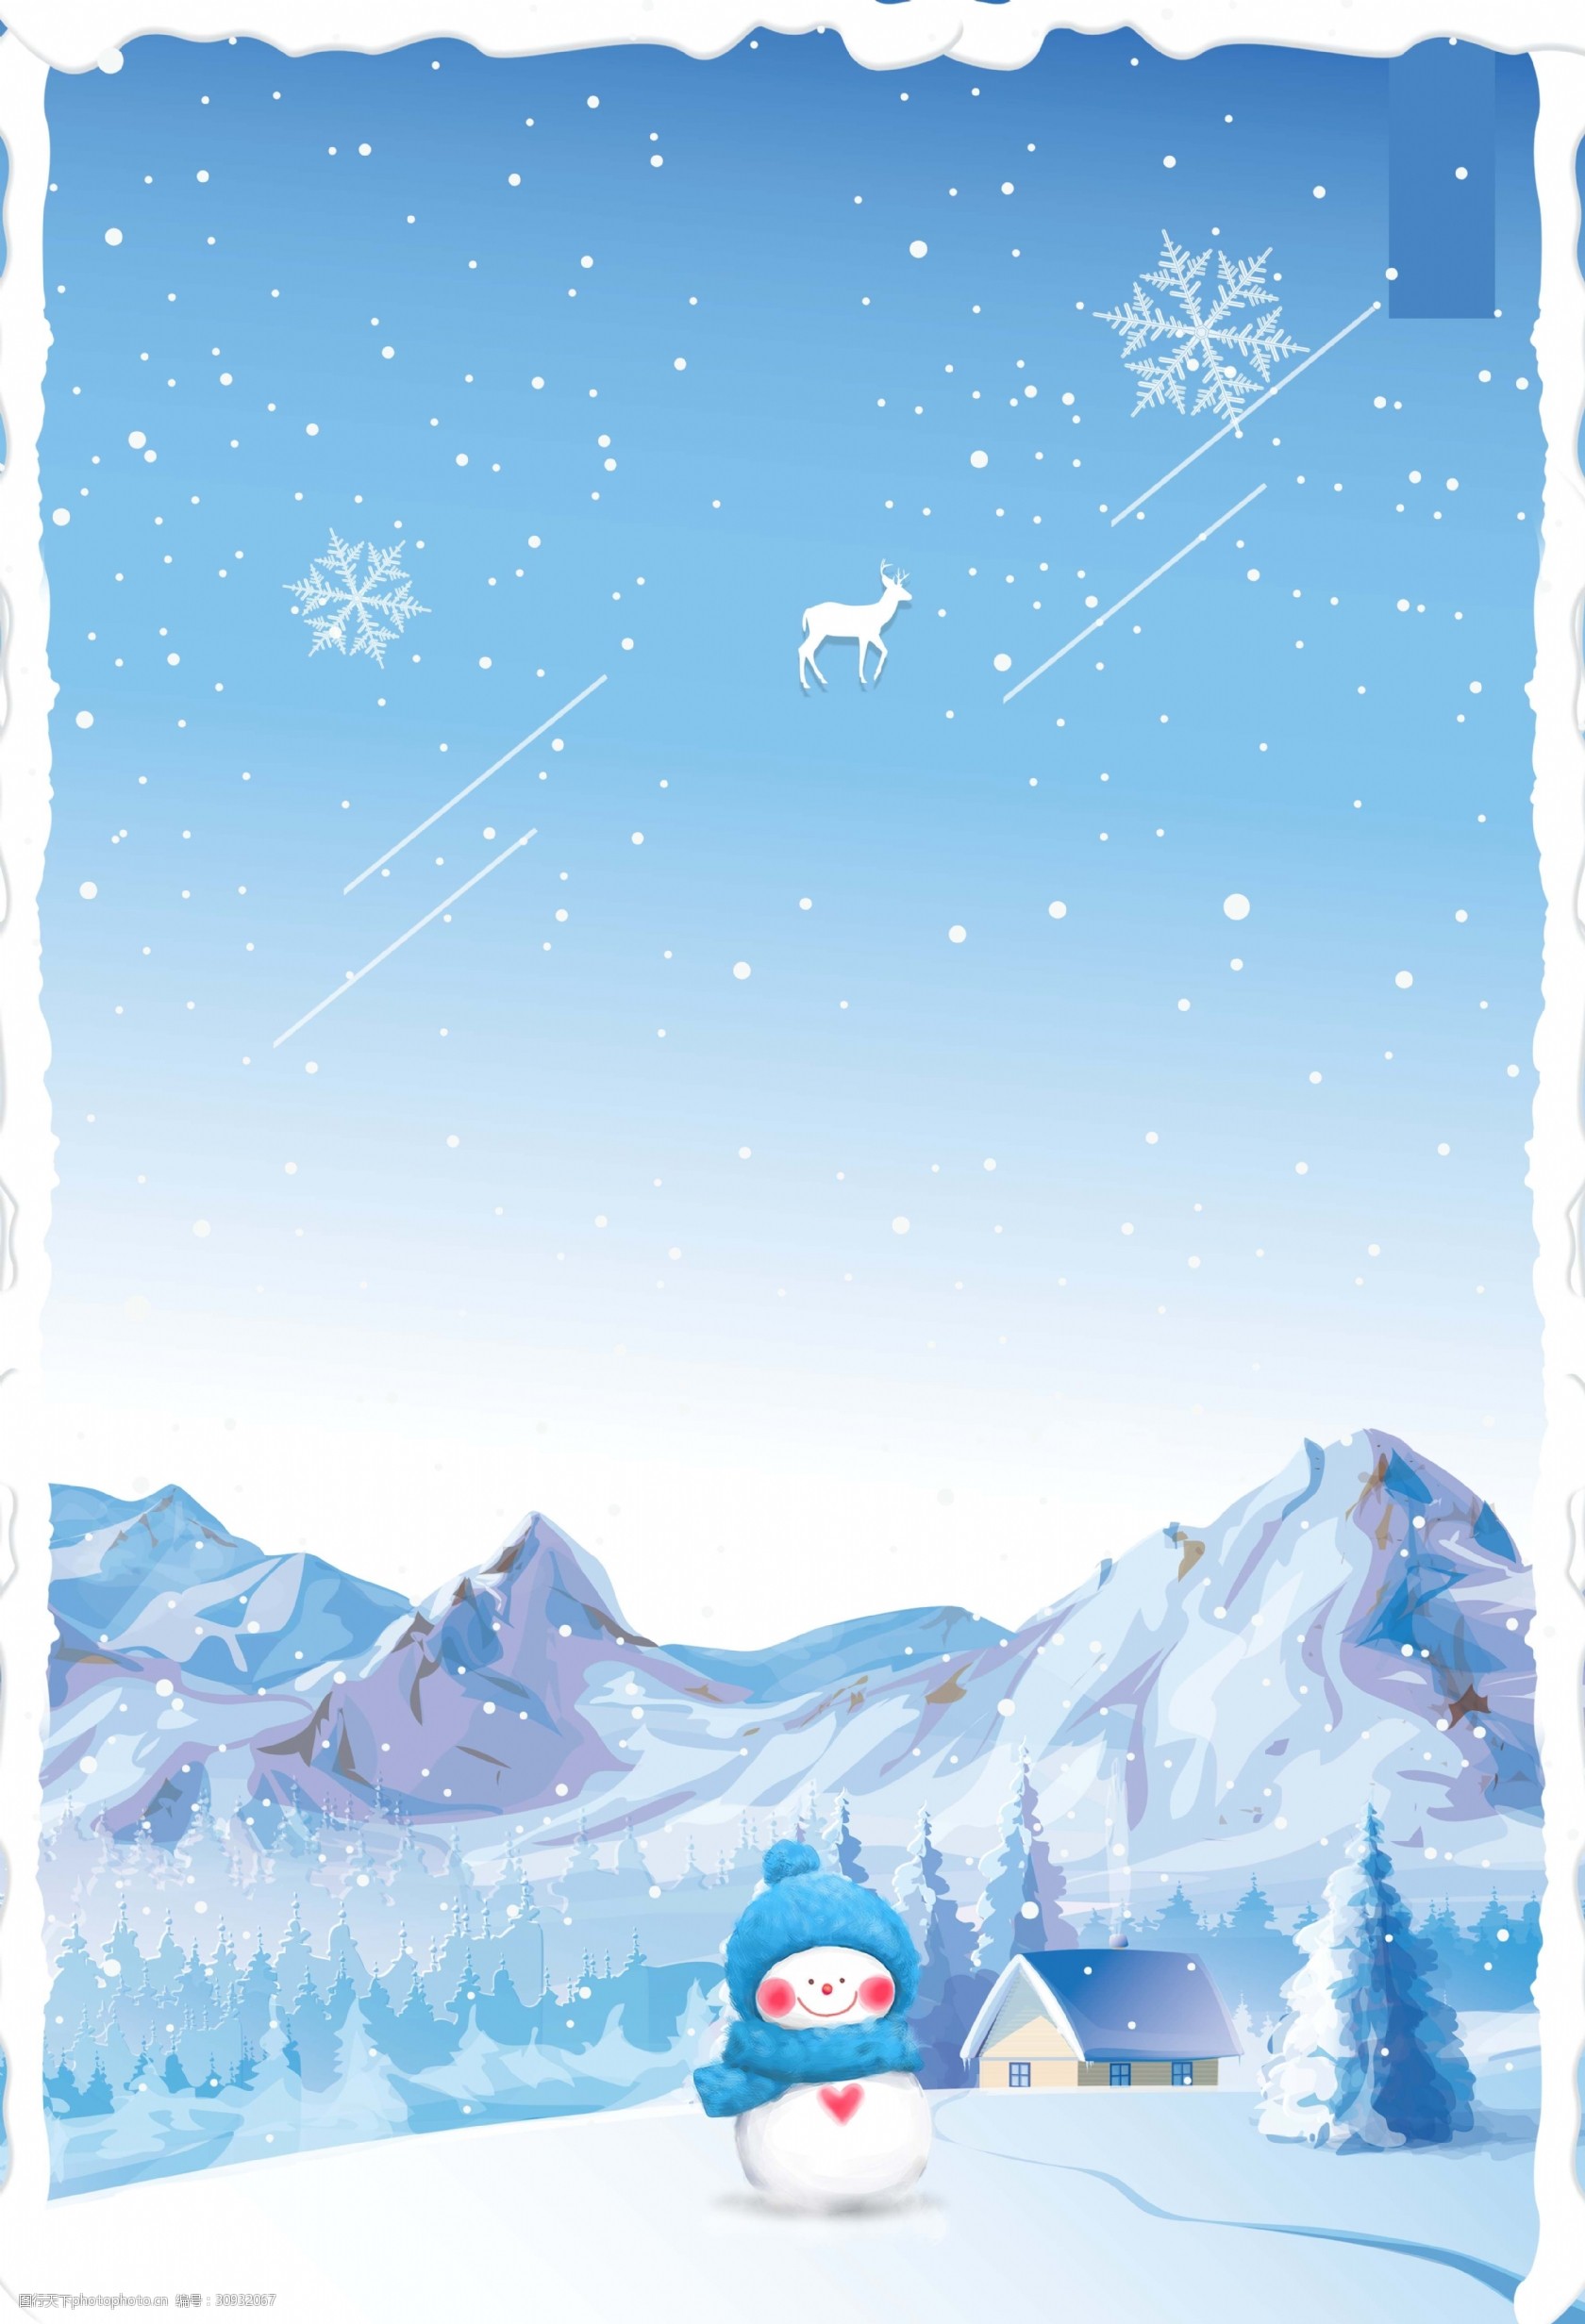 关键词:卡通手绘唯美冬天海报背景 雪花 卡通 自然 唯美 雪人 下雪